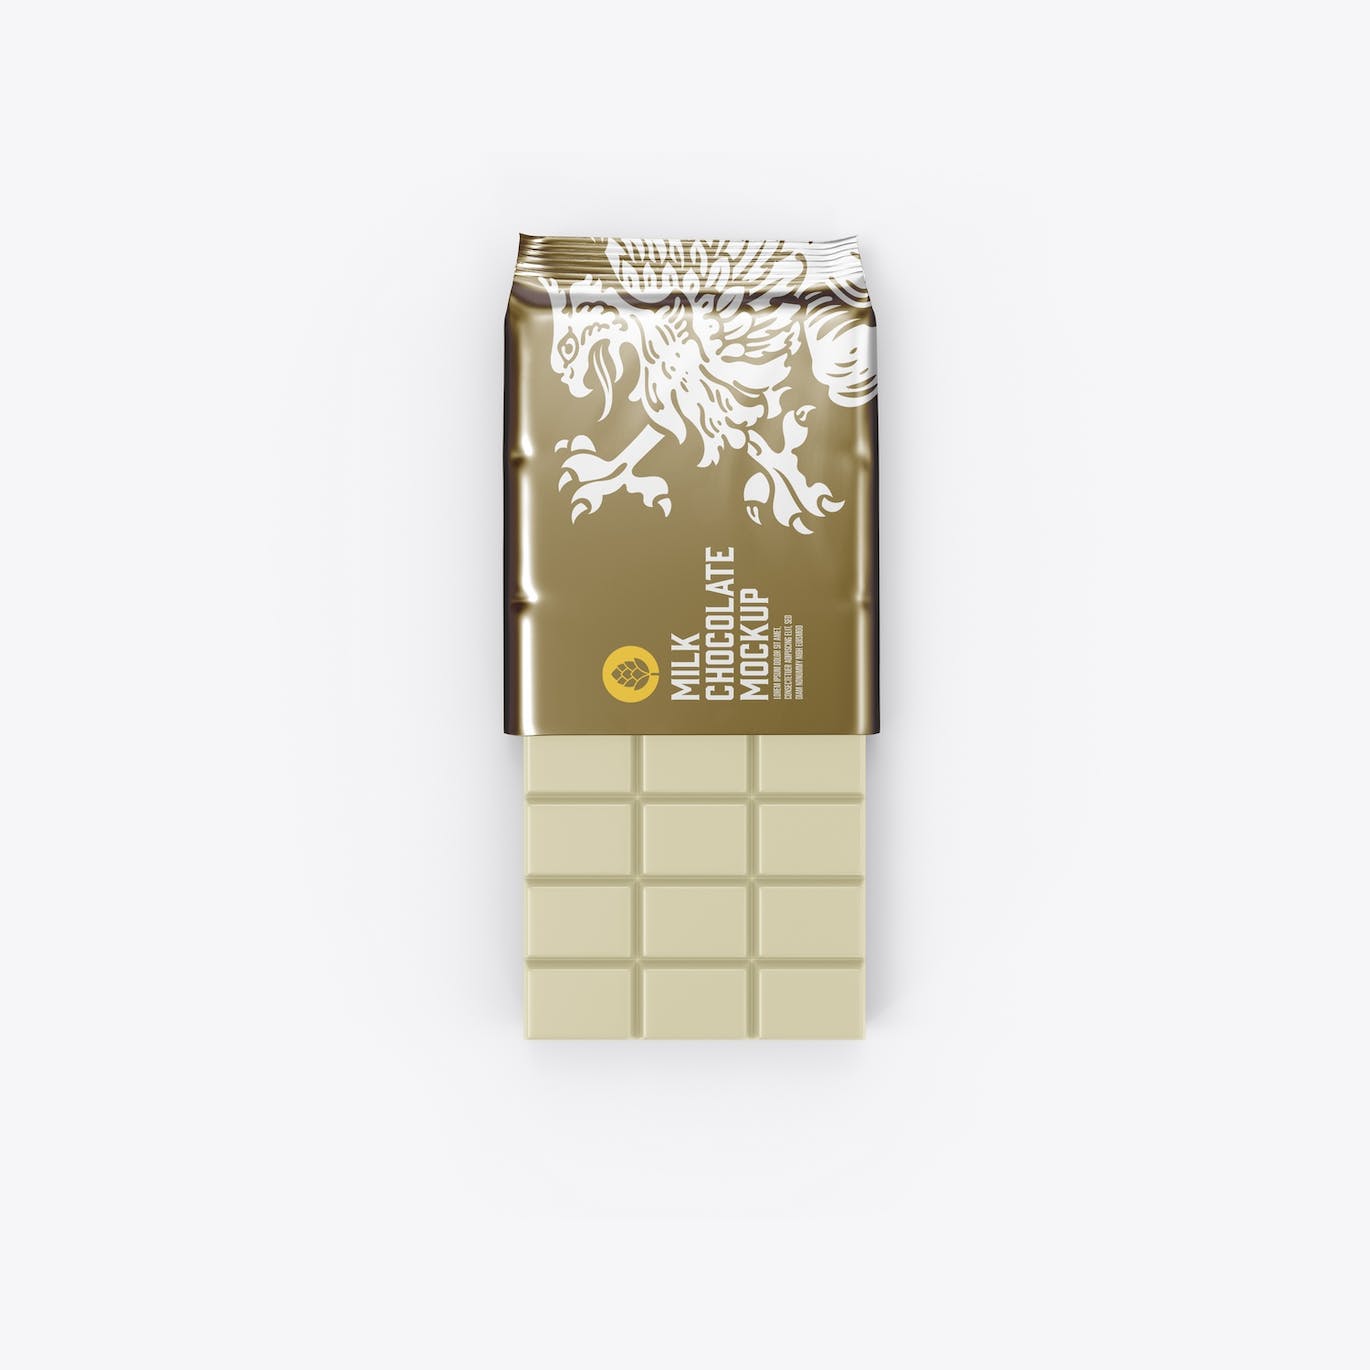 光亮的巧克力棒设计包装样机图 Set Glossy Chocolate Bar Mockup 样机素材 第15张